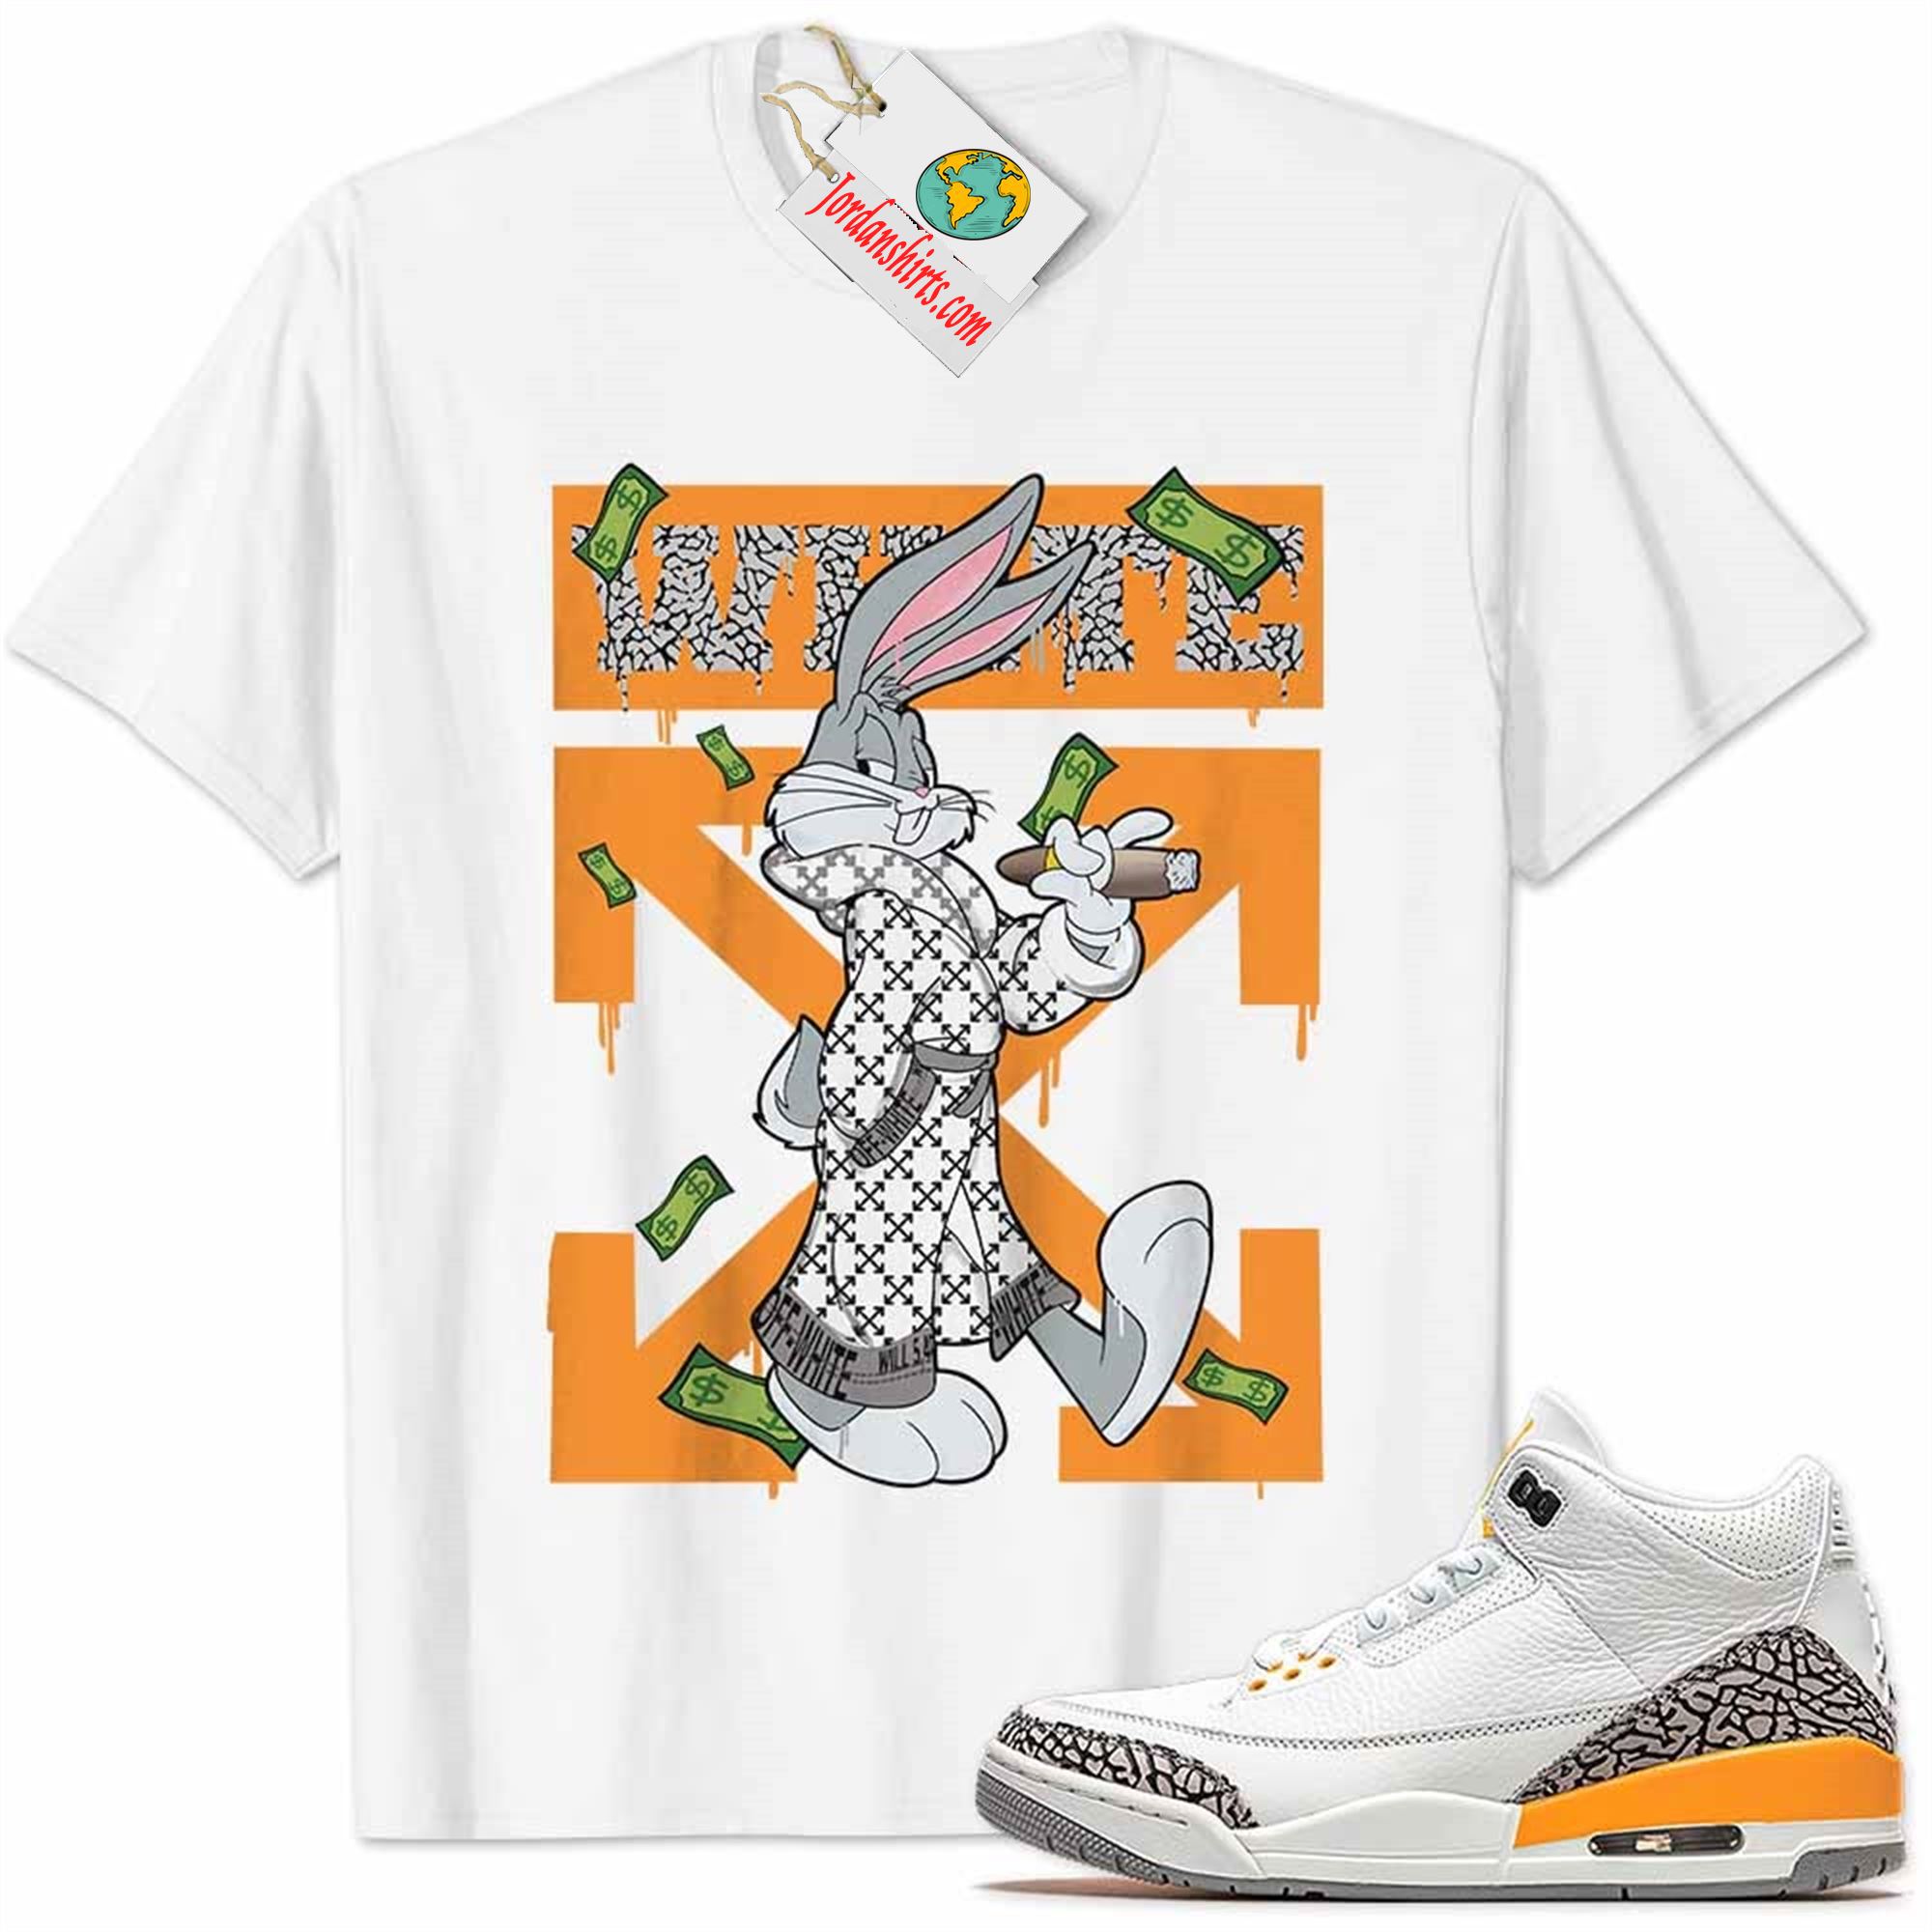 Jordan 3 Shirt, Jordan 3 Laser Orange Shirt Bug Bunny Smokes Weed Money Falling White Size Up To 5xl